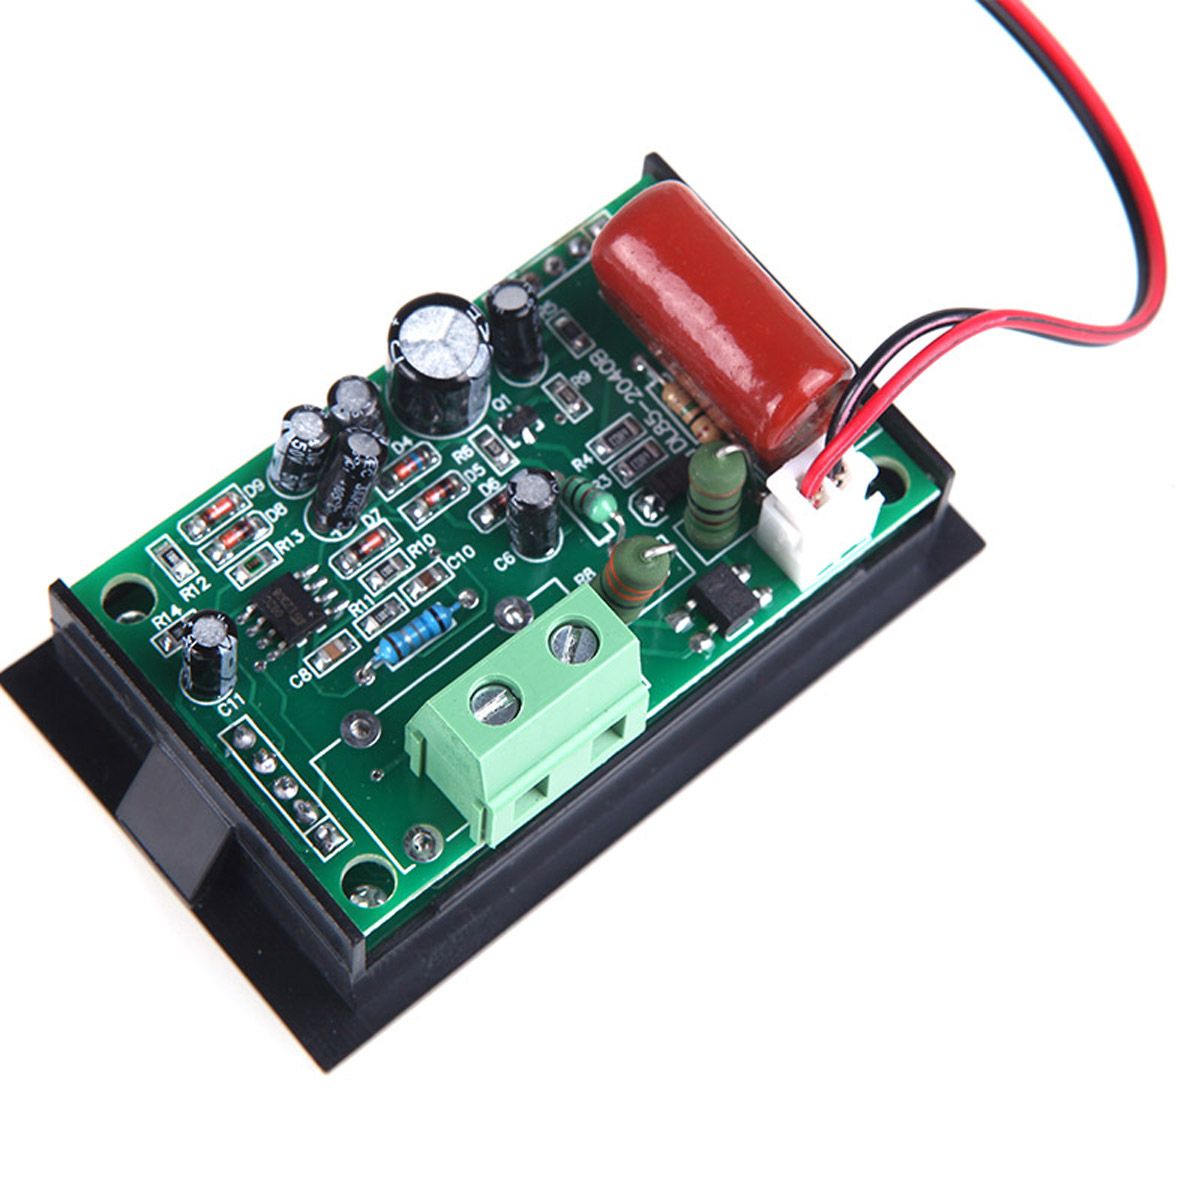 DL85-2042-Digital-LED-Voltage-Meter-Ammeter-Voltmeter-with-Current-Transformer-AC80-300V-0-1000A-Dua-1443868